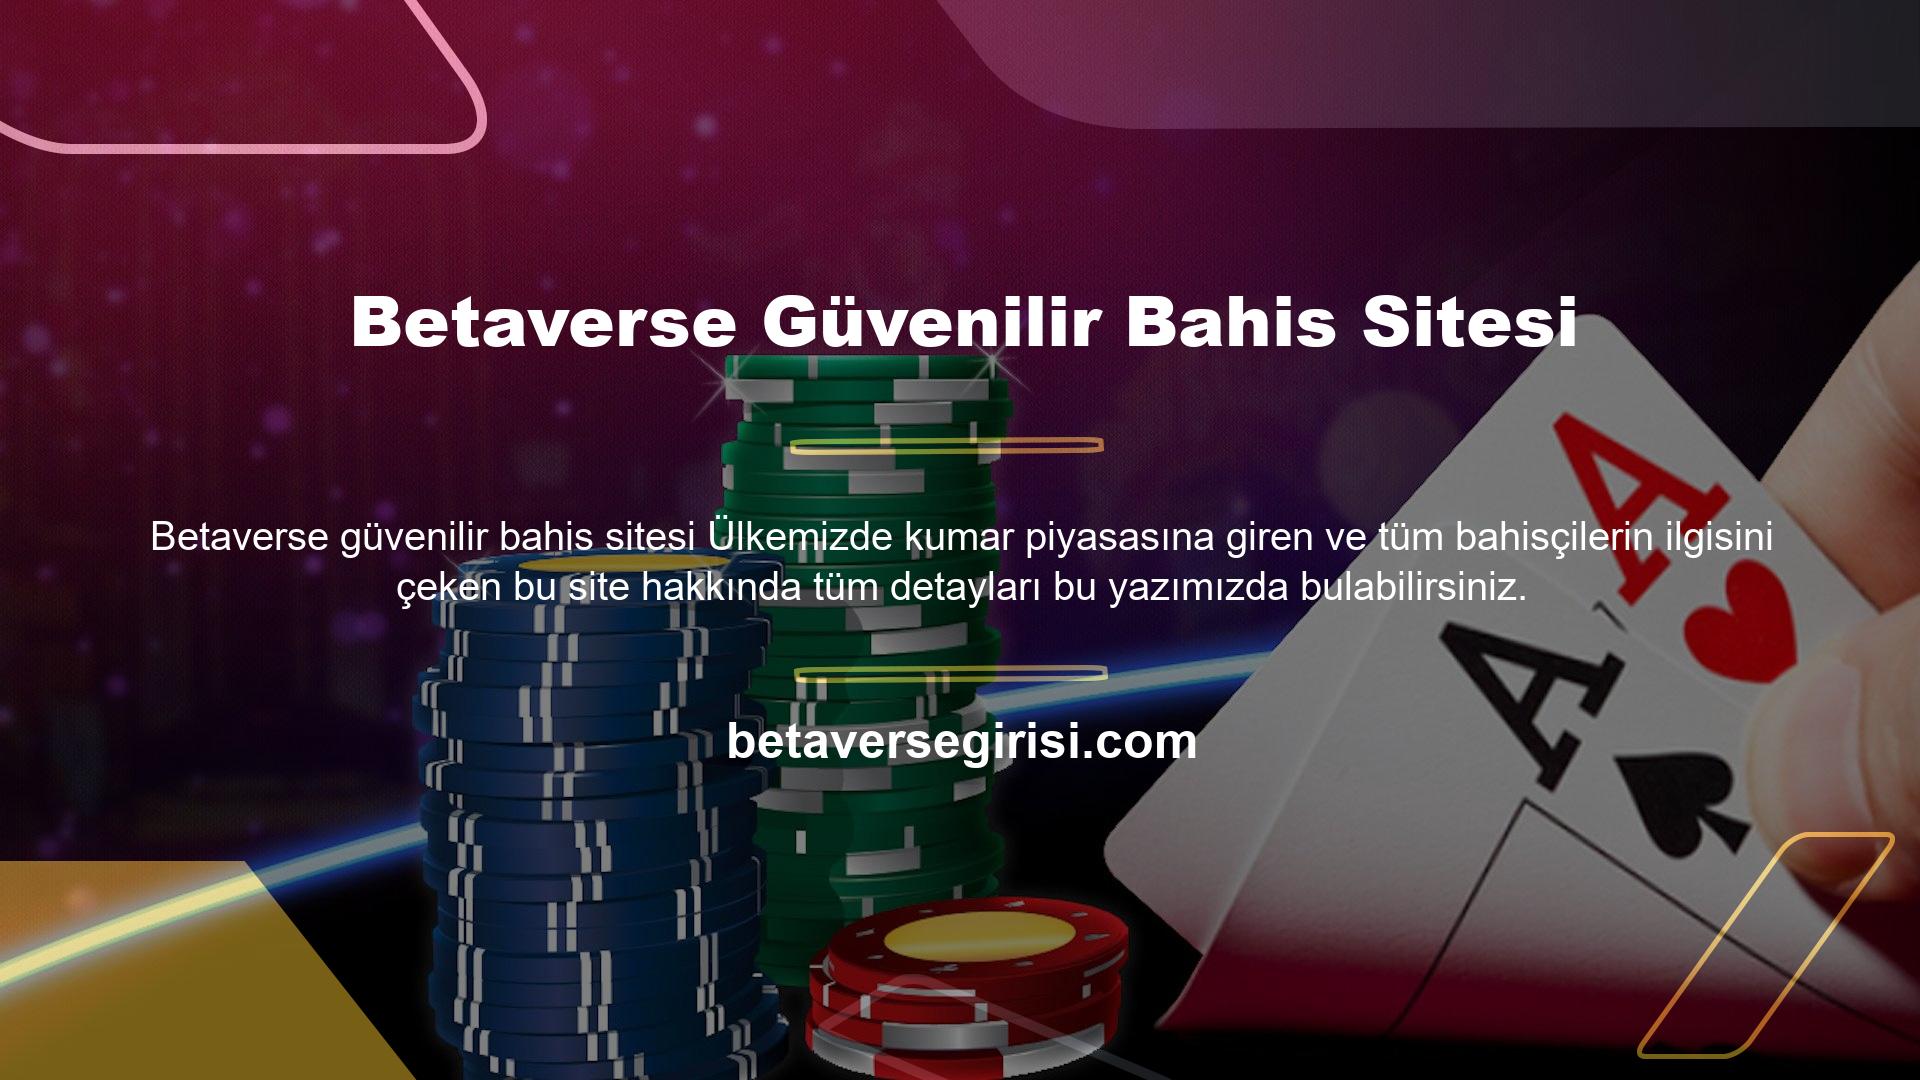 Yabancı yasal bahis ve casino sitelerinden biri olan Betaverse sitesine bağlanmak için sayfamızdaki akıllı bağlantıyı kullanın